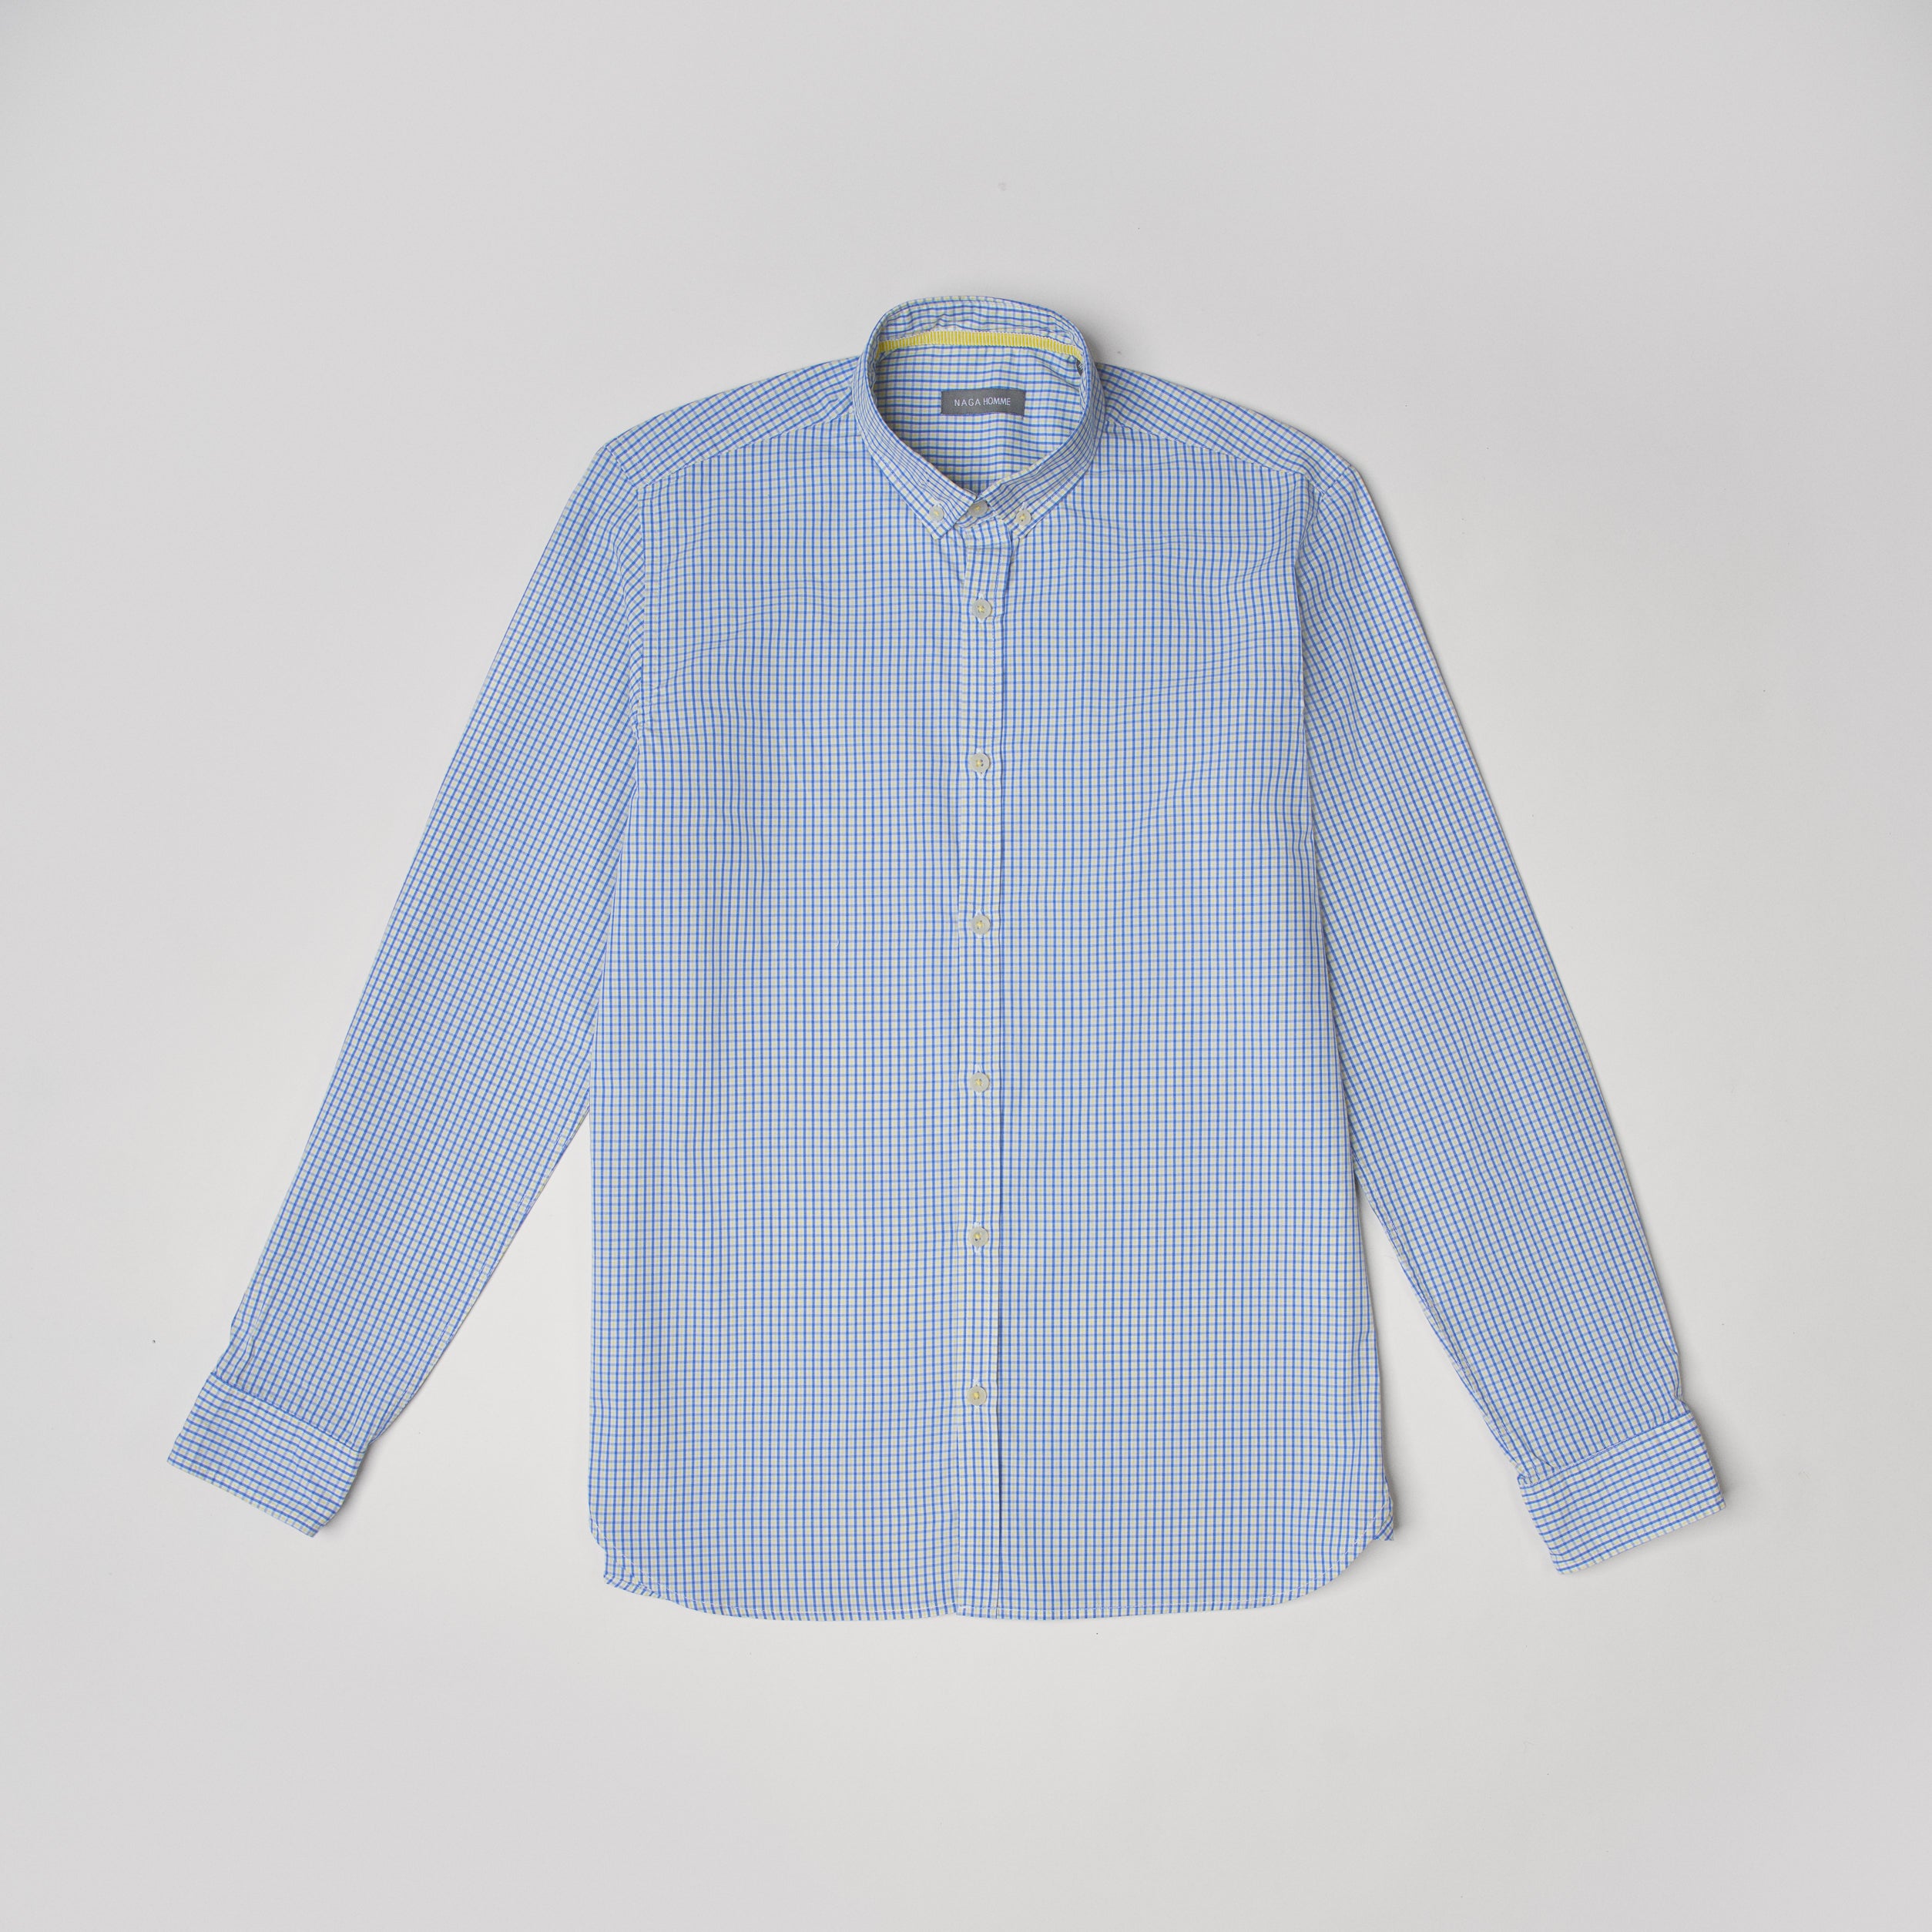 White * Light Blue Shirt(653)